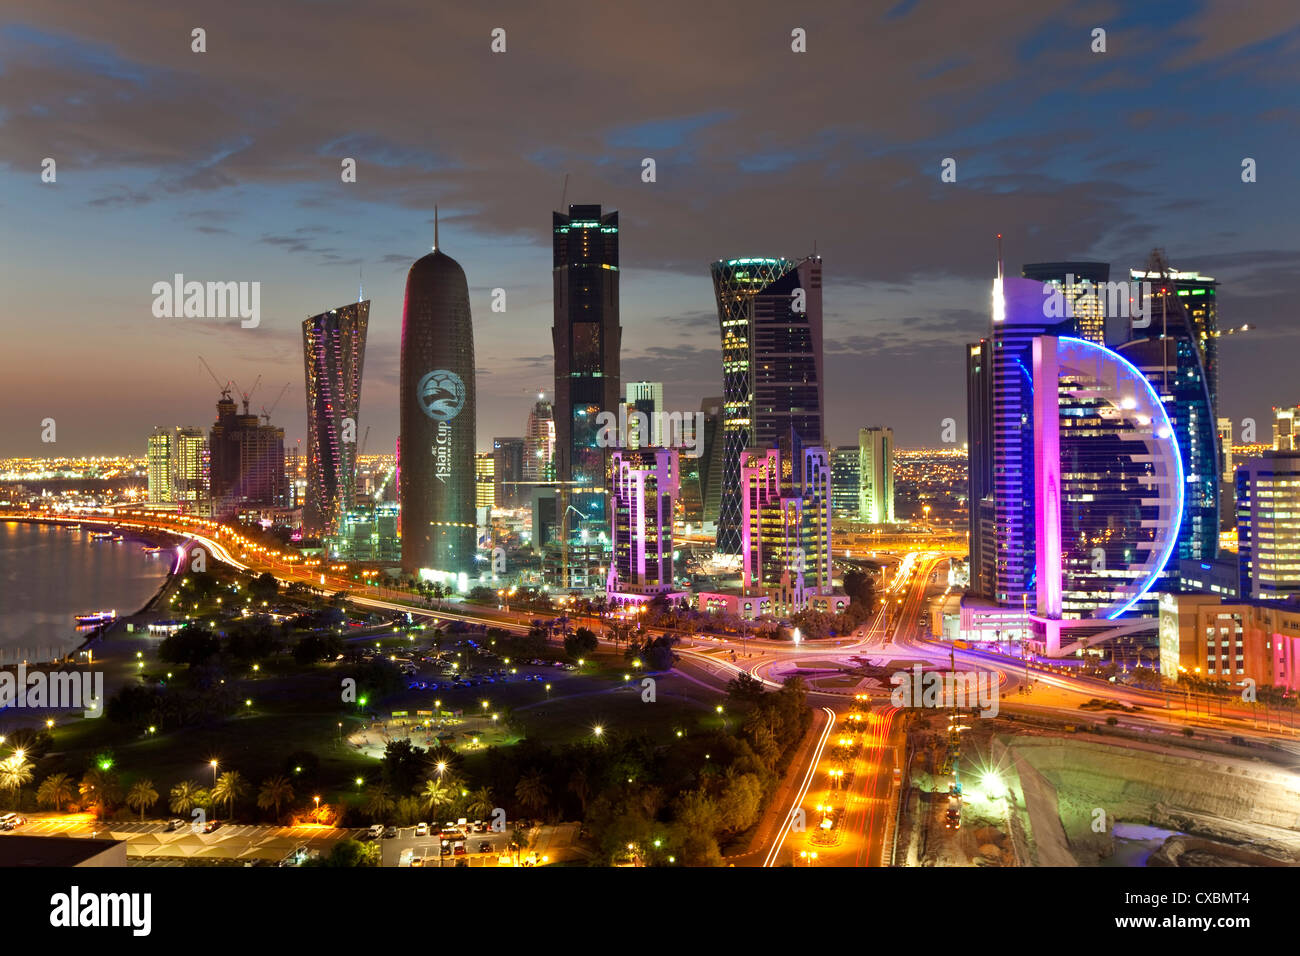 Nuevo skyline del distrito financiero central de West Bay, Doha, Qatar, Oriente Medio Foto de stock